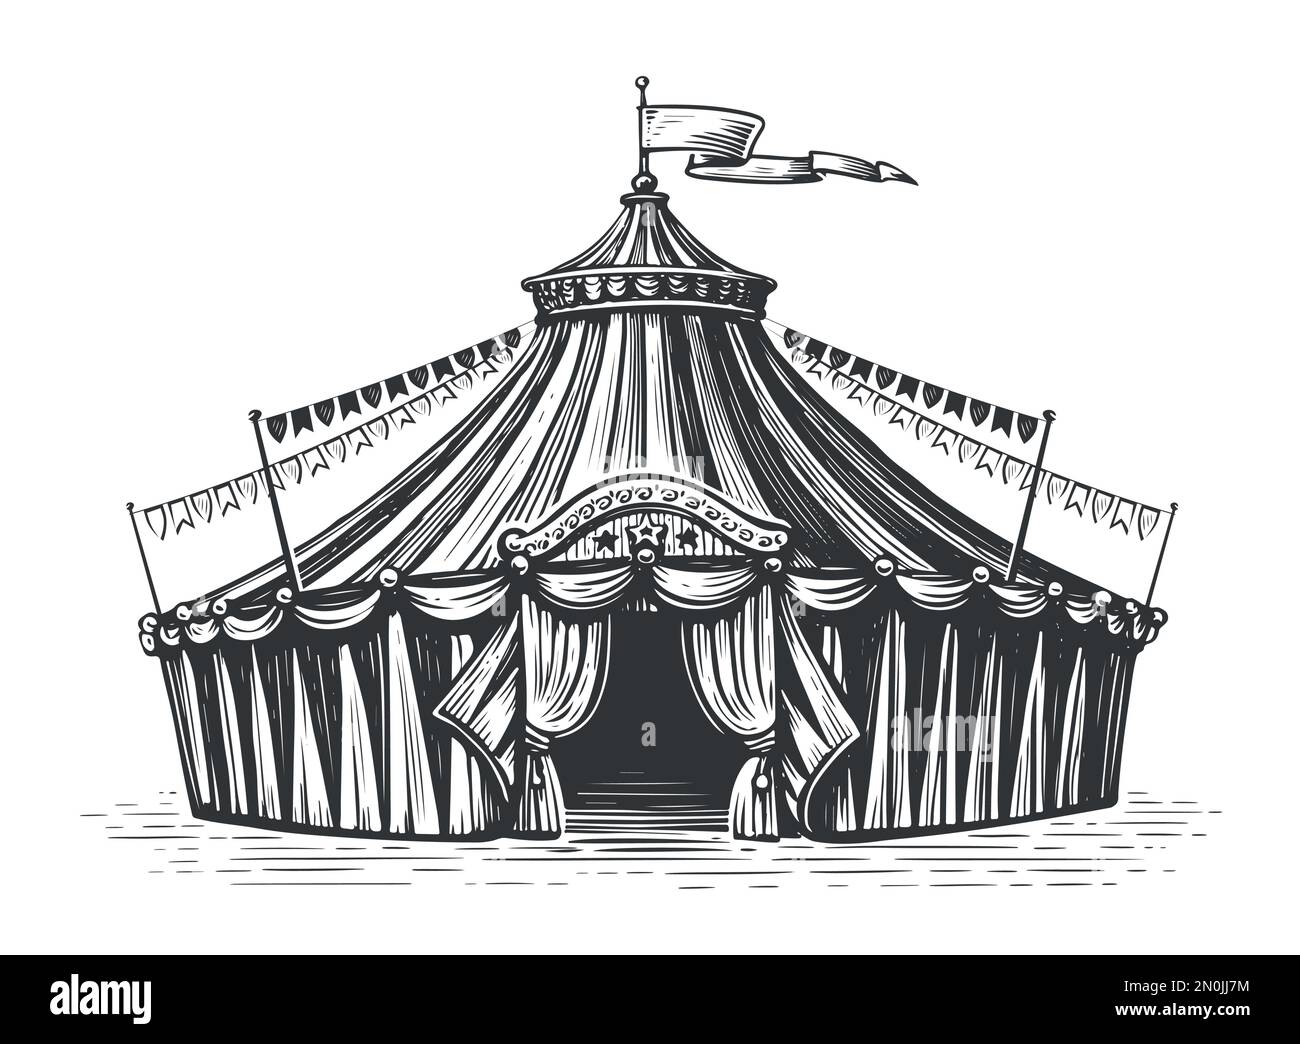 Tente de cirque rétro à rayures avec drapeau. Fête. Illustration vectorielle d'esquisse vintage dessinée à la main Illustration de Vecteur